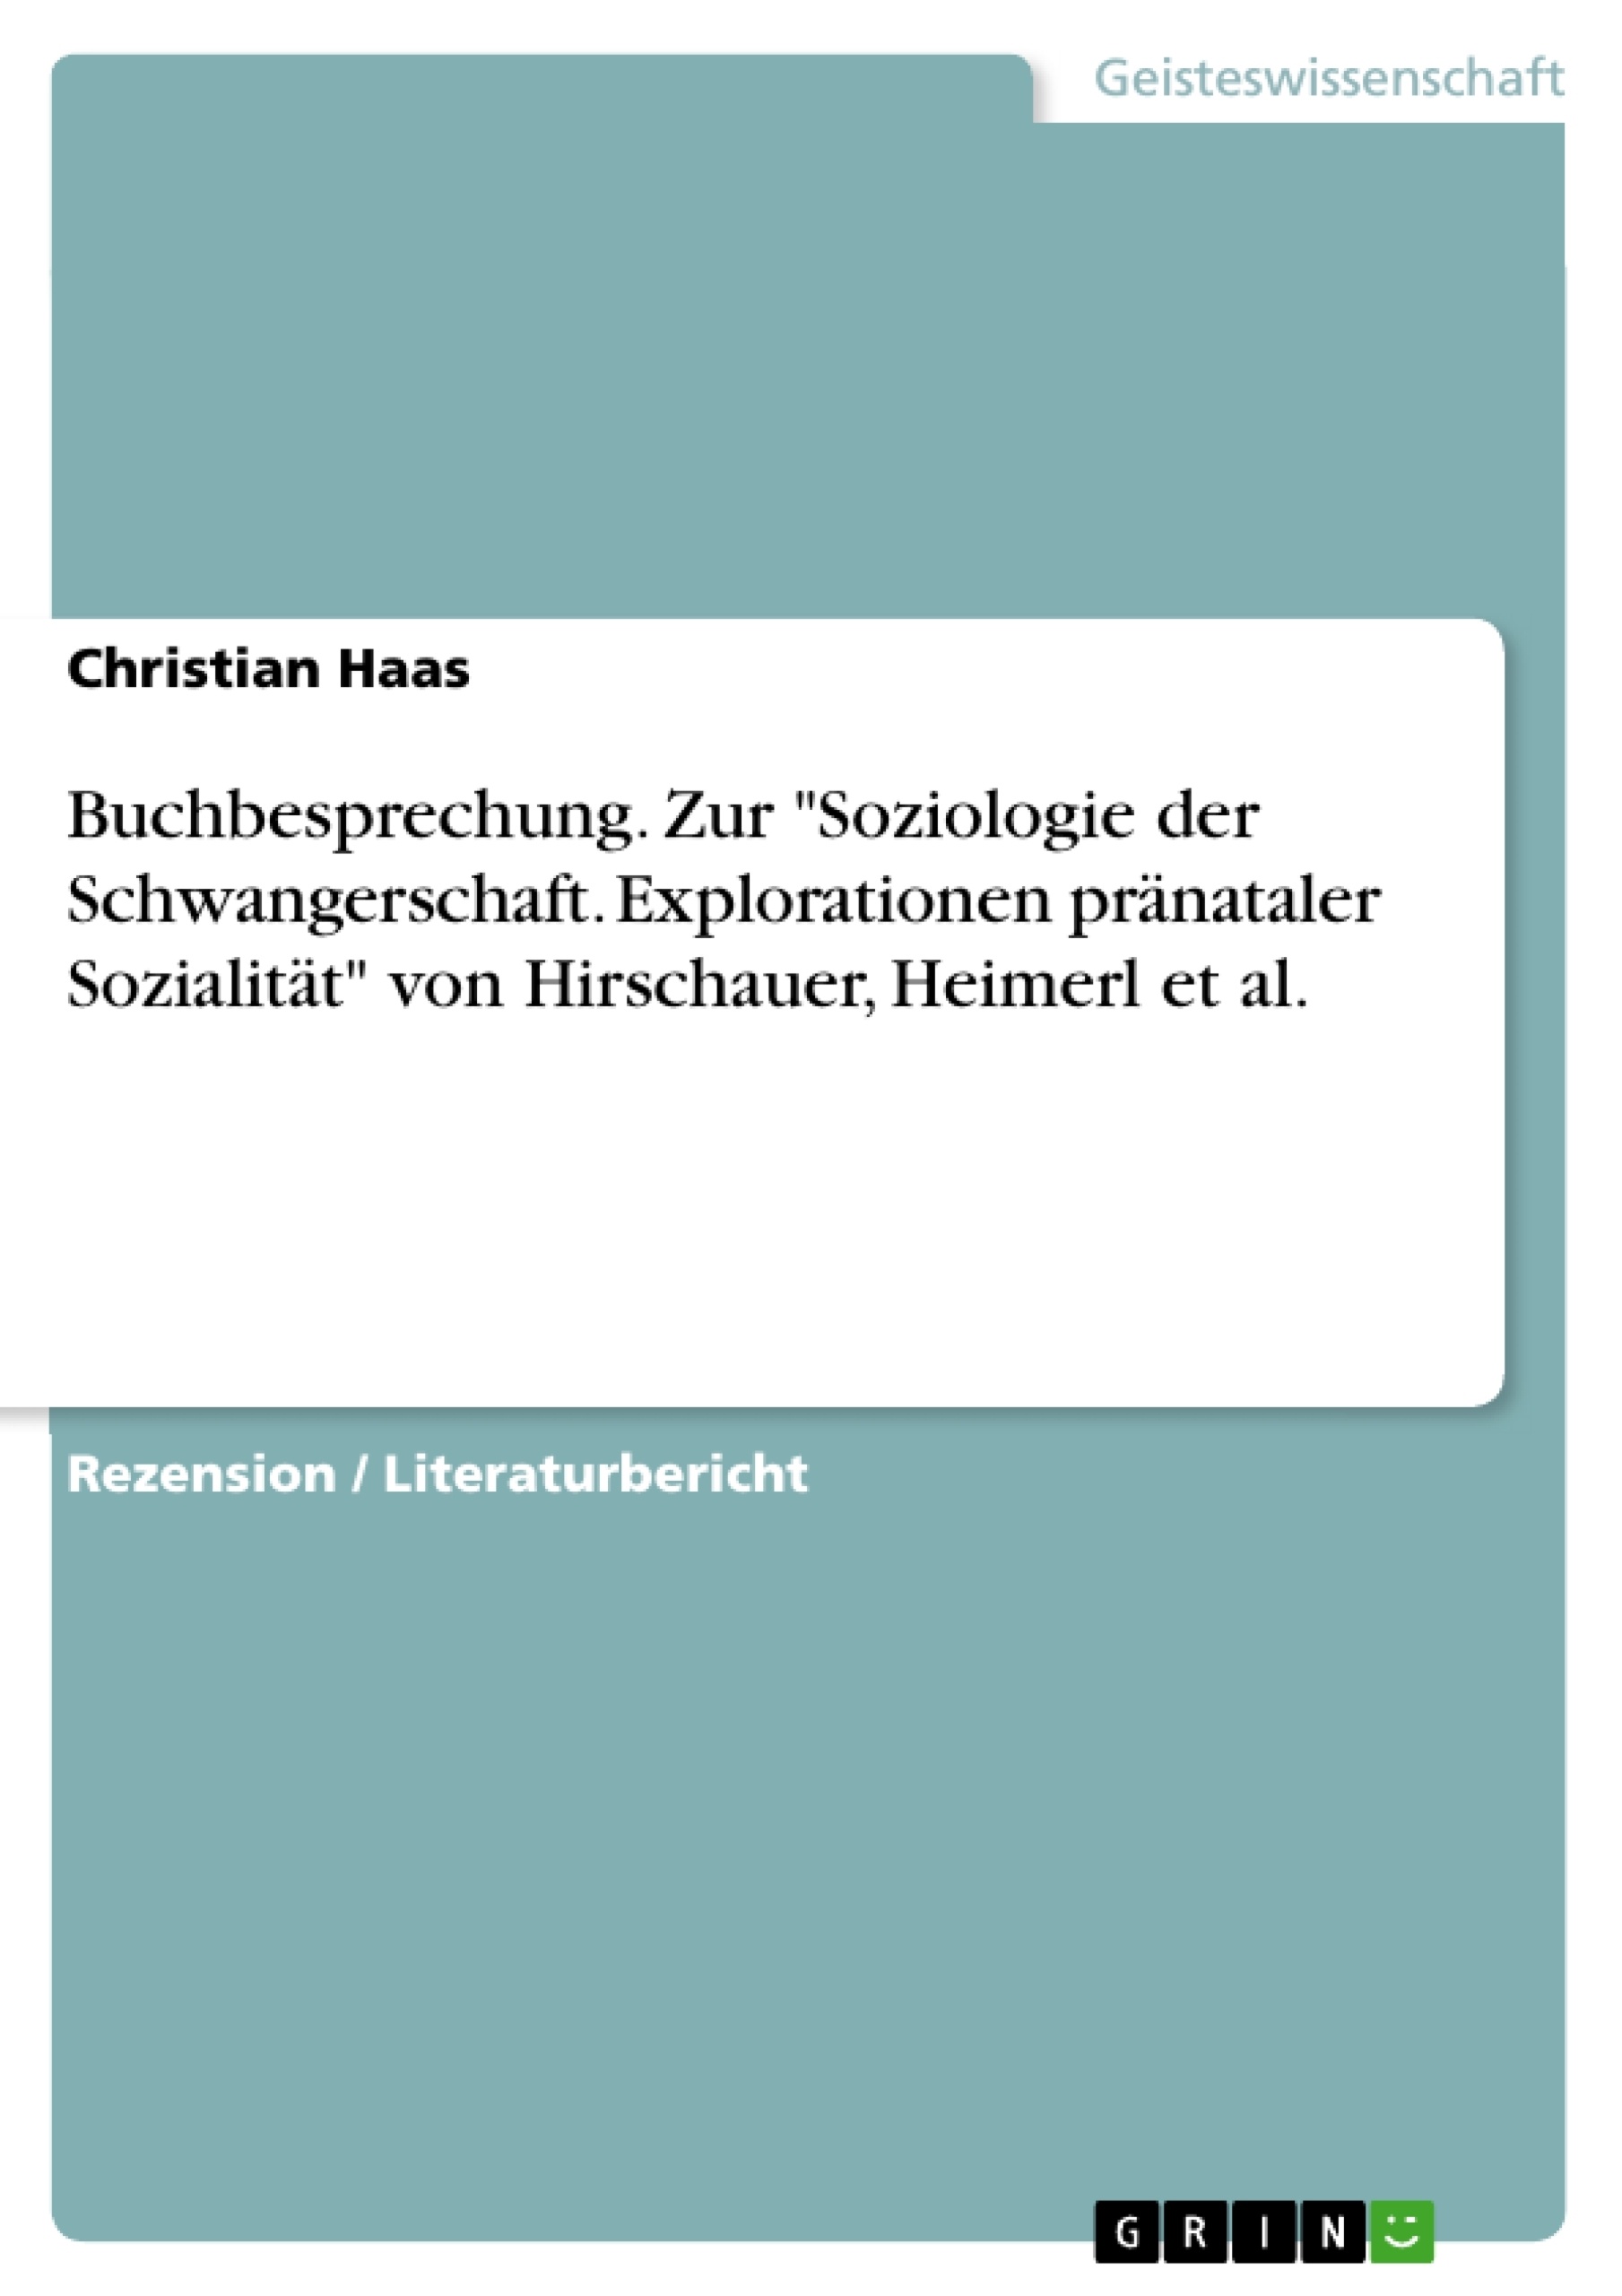 Título: Buchbesprechung. Zur "Soziologie der Schwangerschaft. Explorationen pränataler Sozialität" von Hirschauer, Heimerl et al.